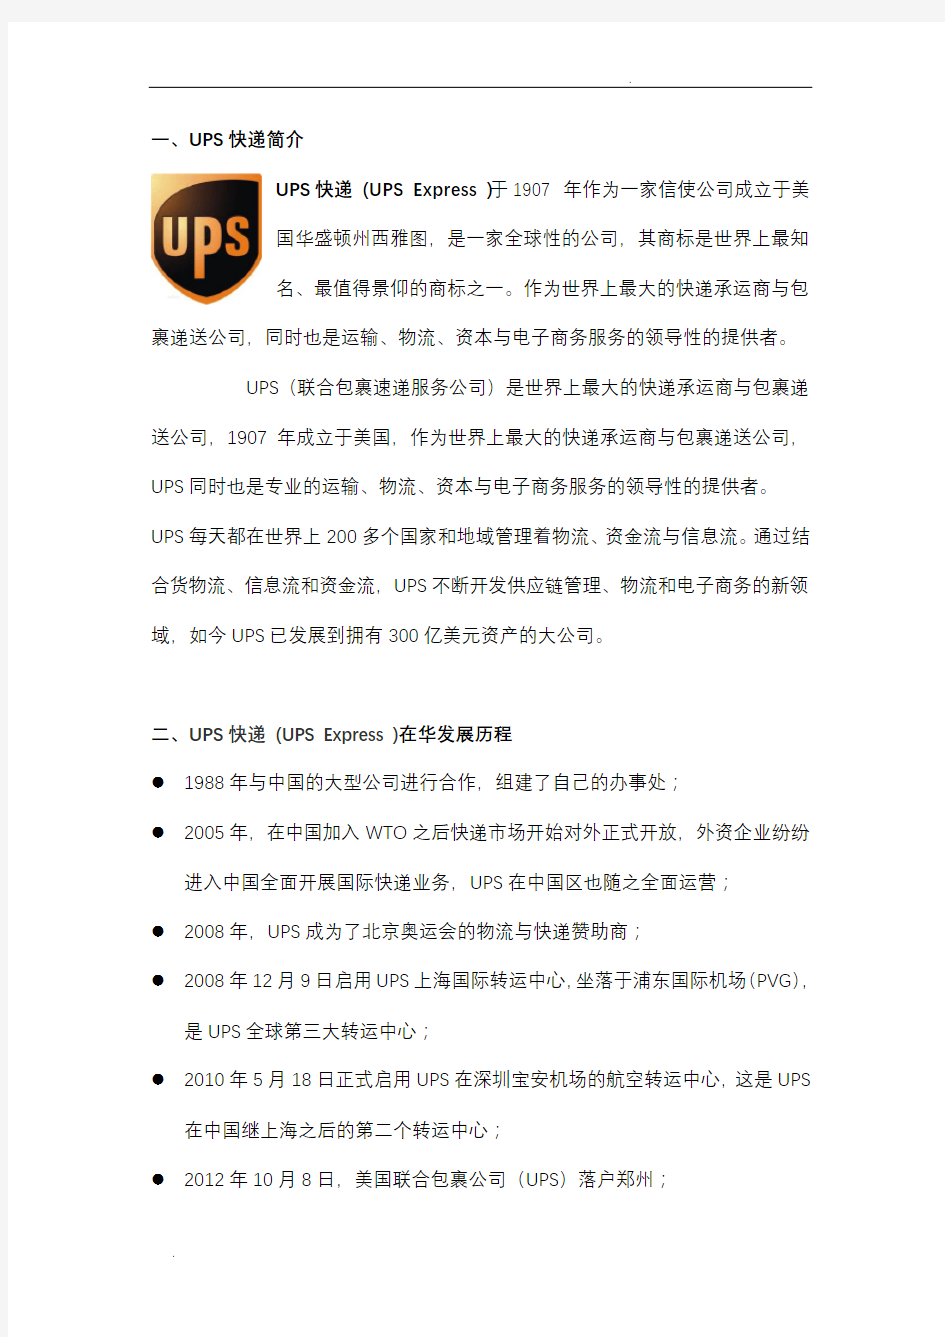 UPS快递公司战略分析